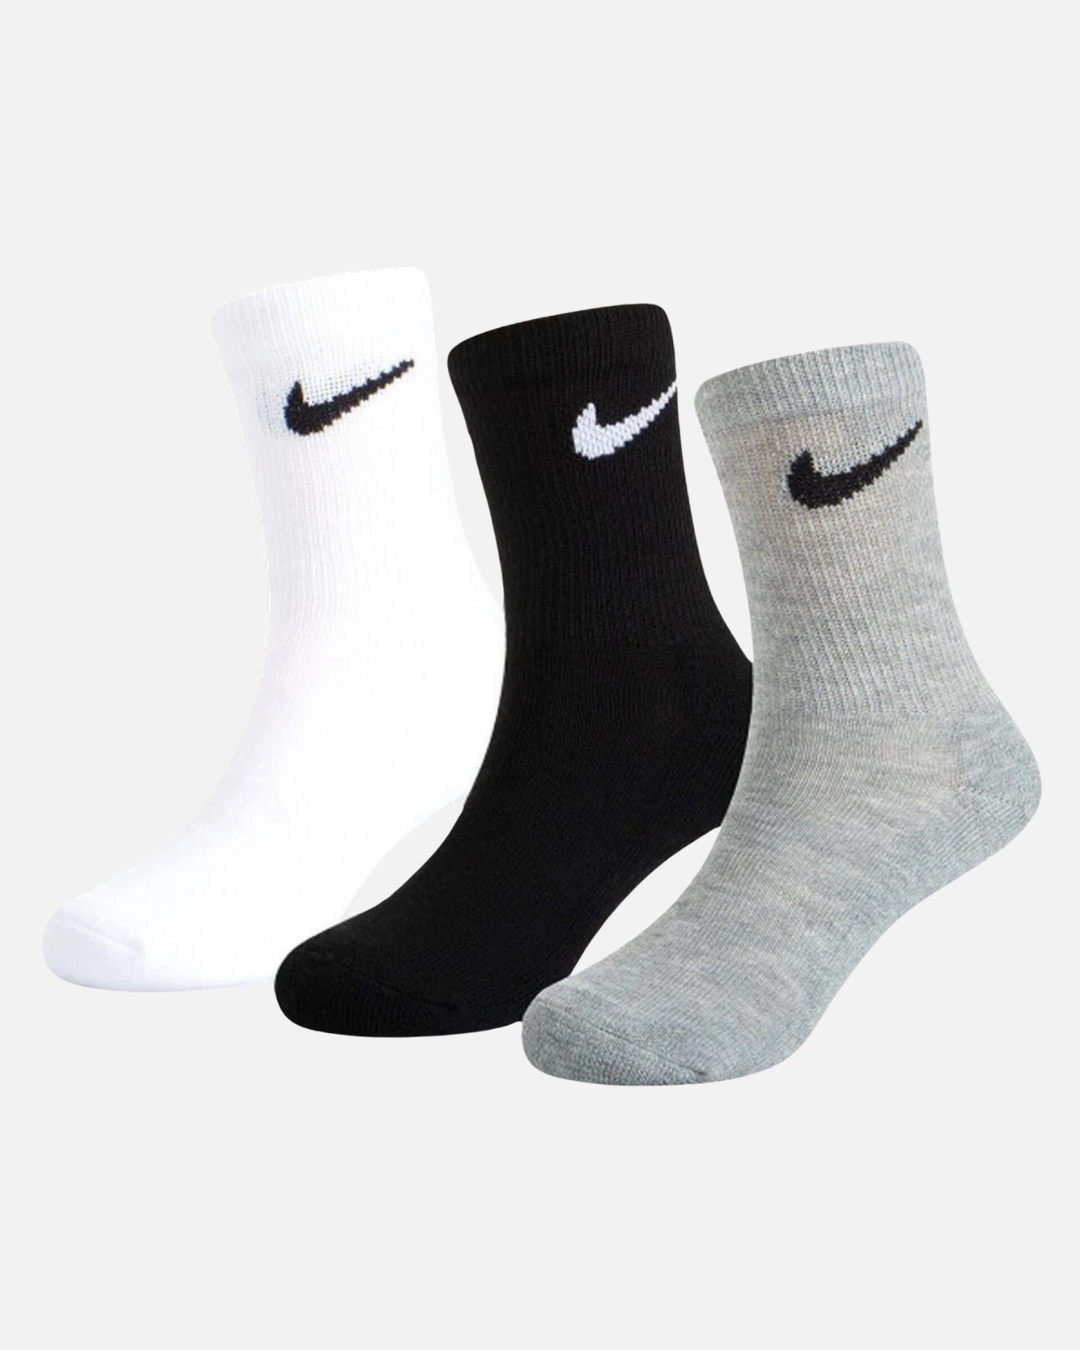 Pack 3 paires de chaussette Nike -Noir/Gris/Blanc